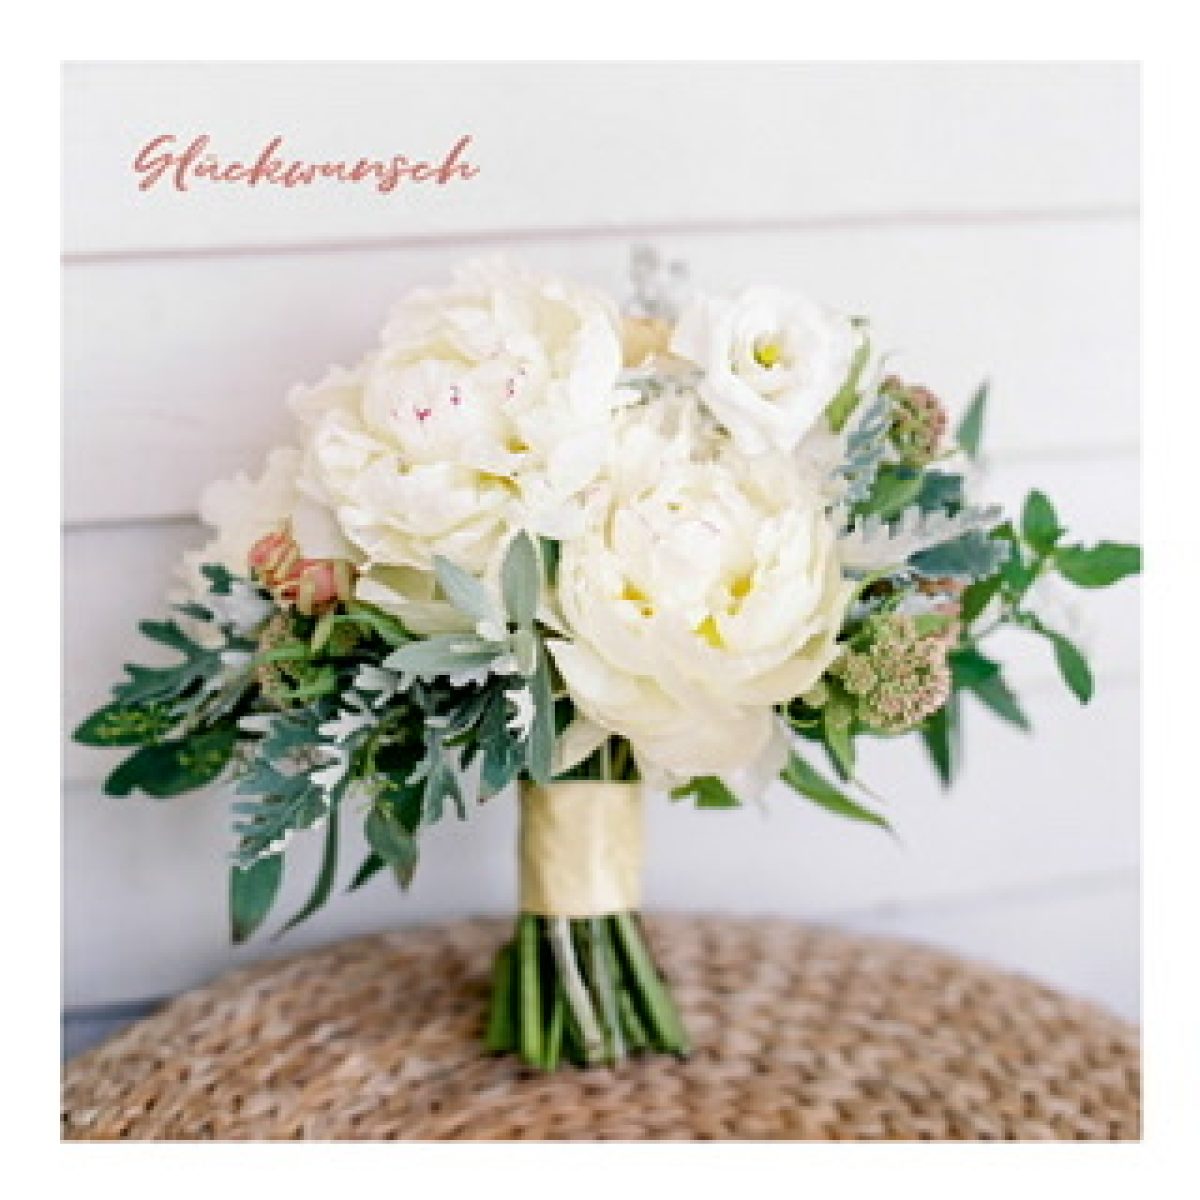 Postkarte "Glückwunsch" mit Blumenstrauß